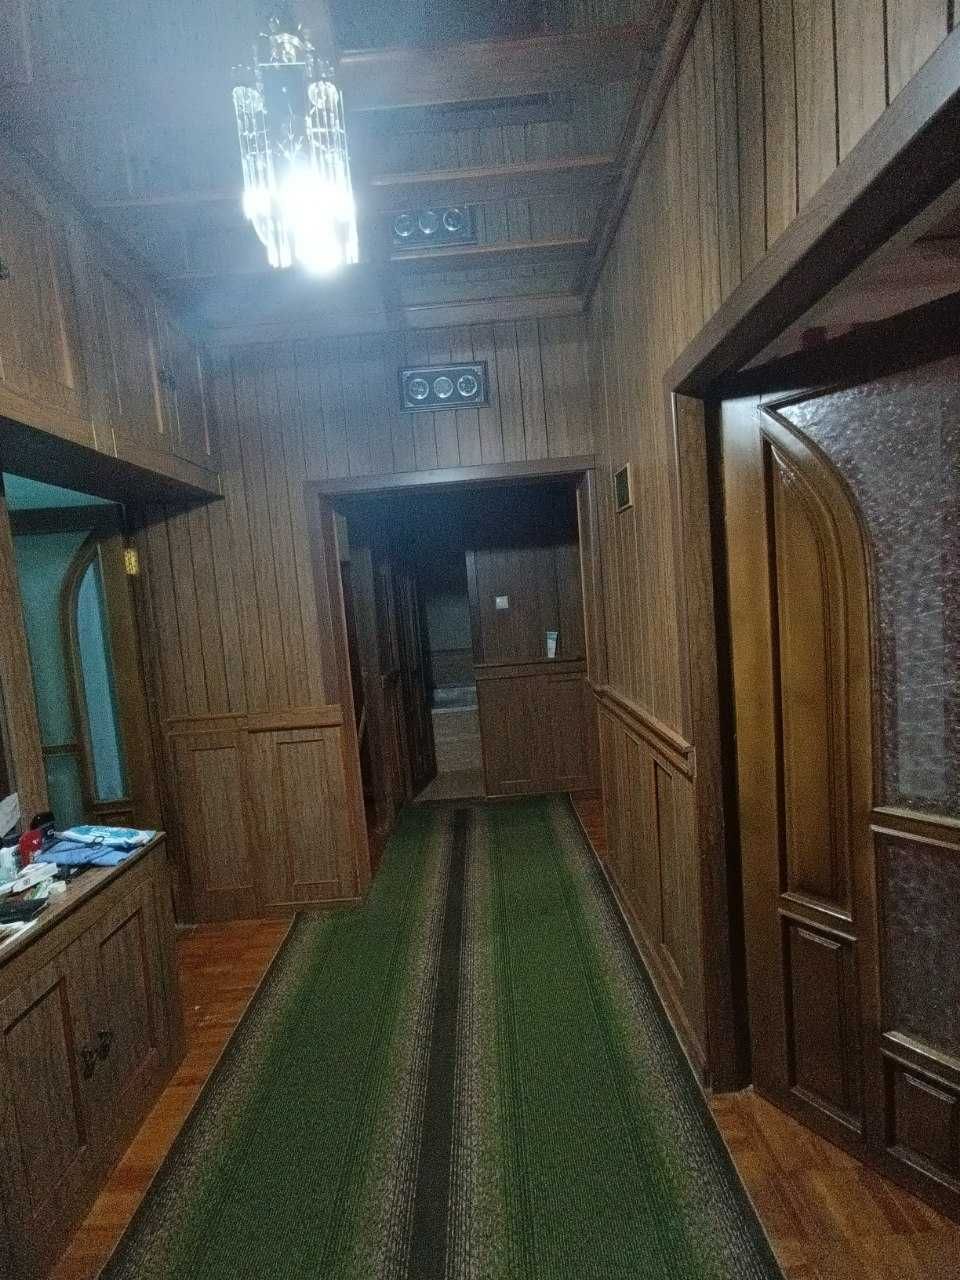 Продается классная 3 комнатная квартира на Кадышева